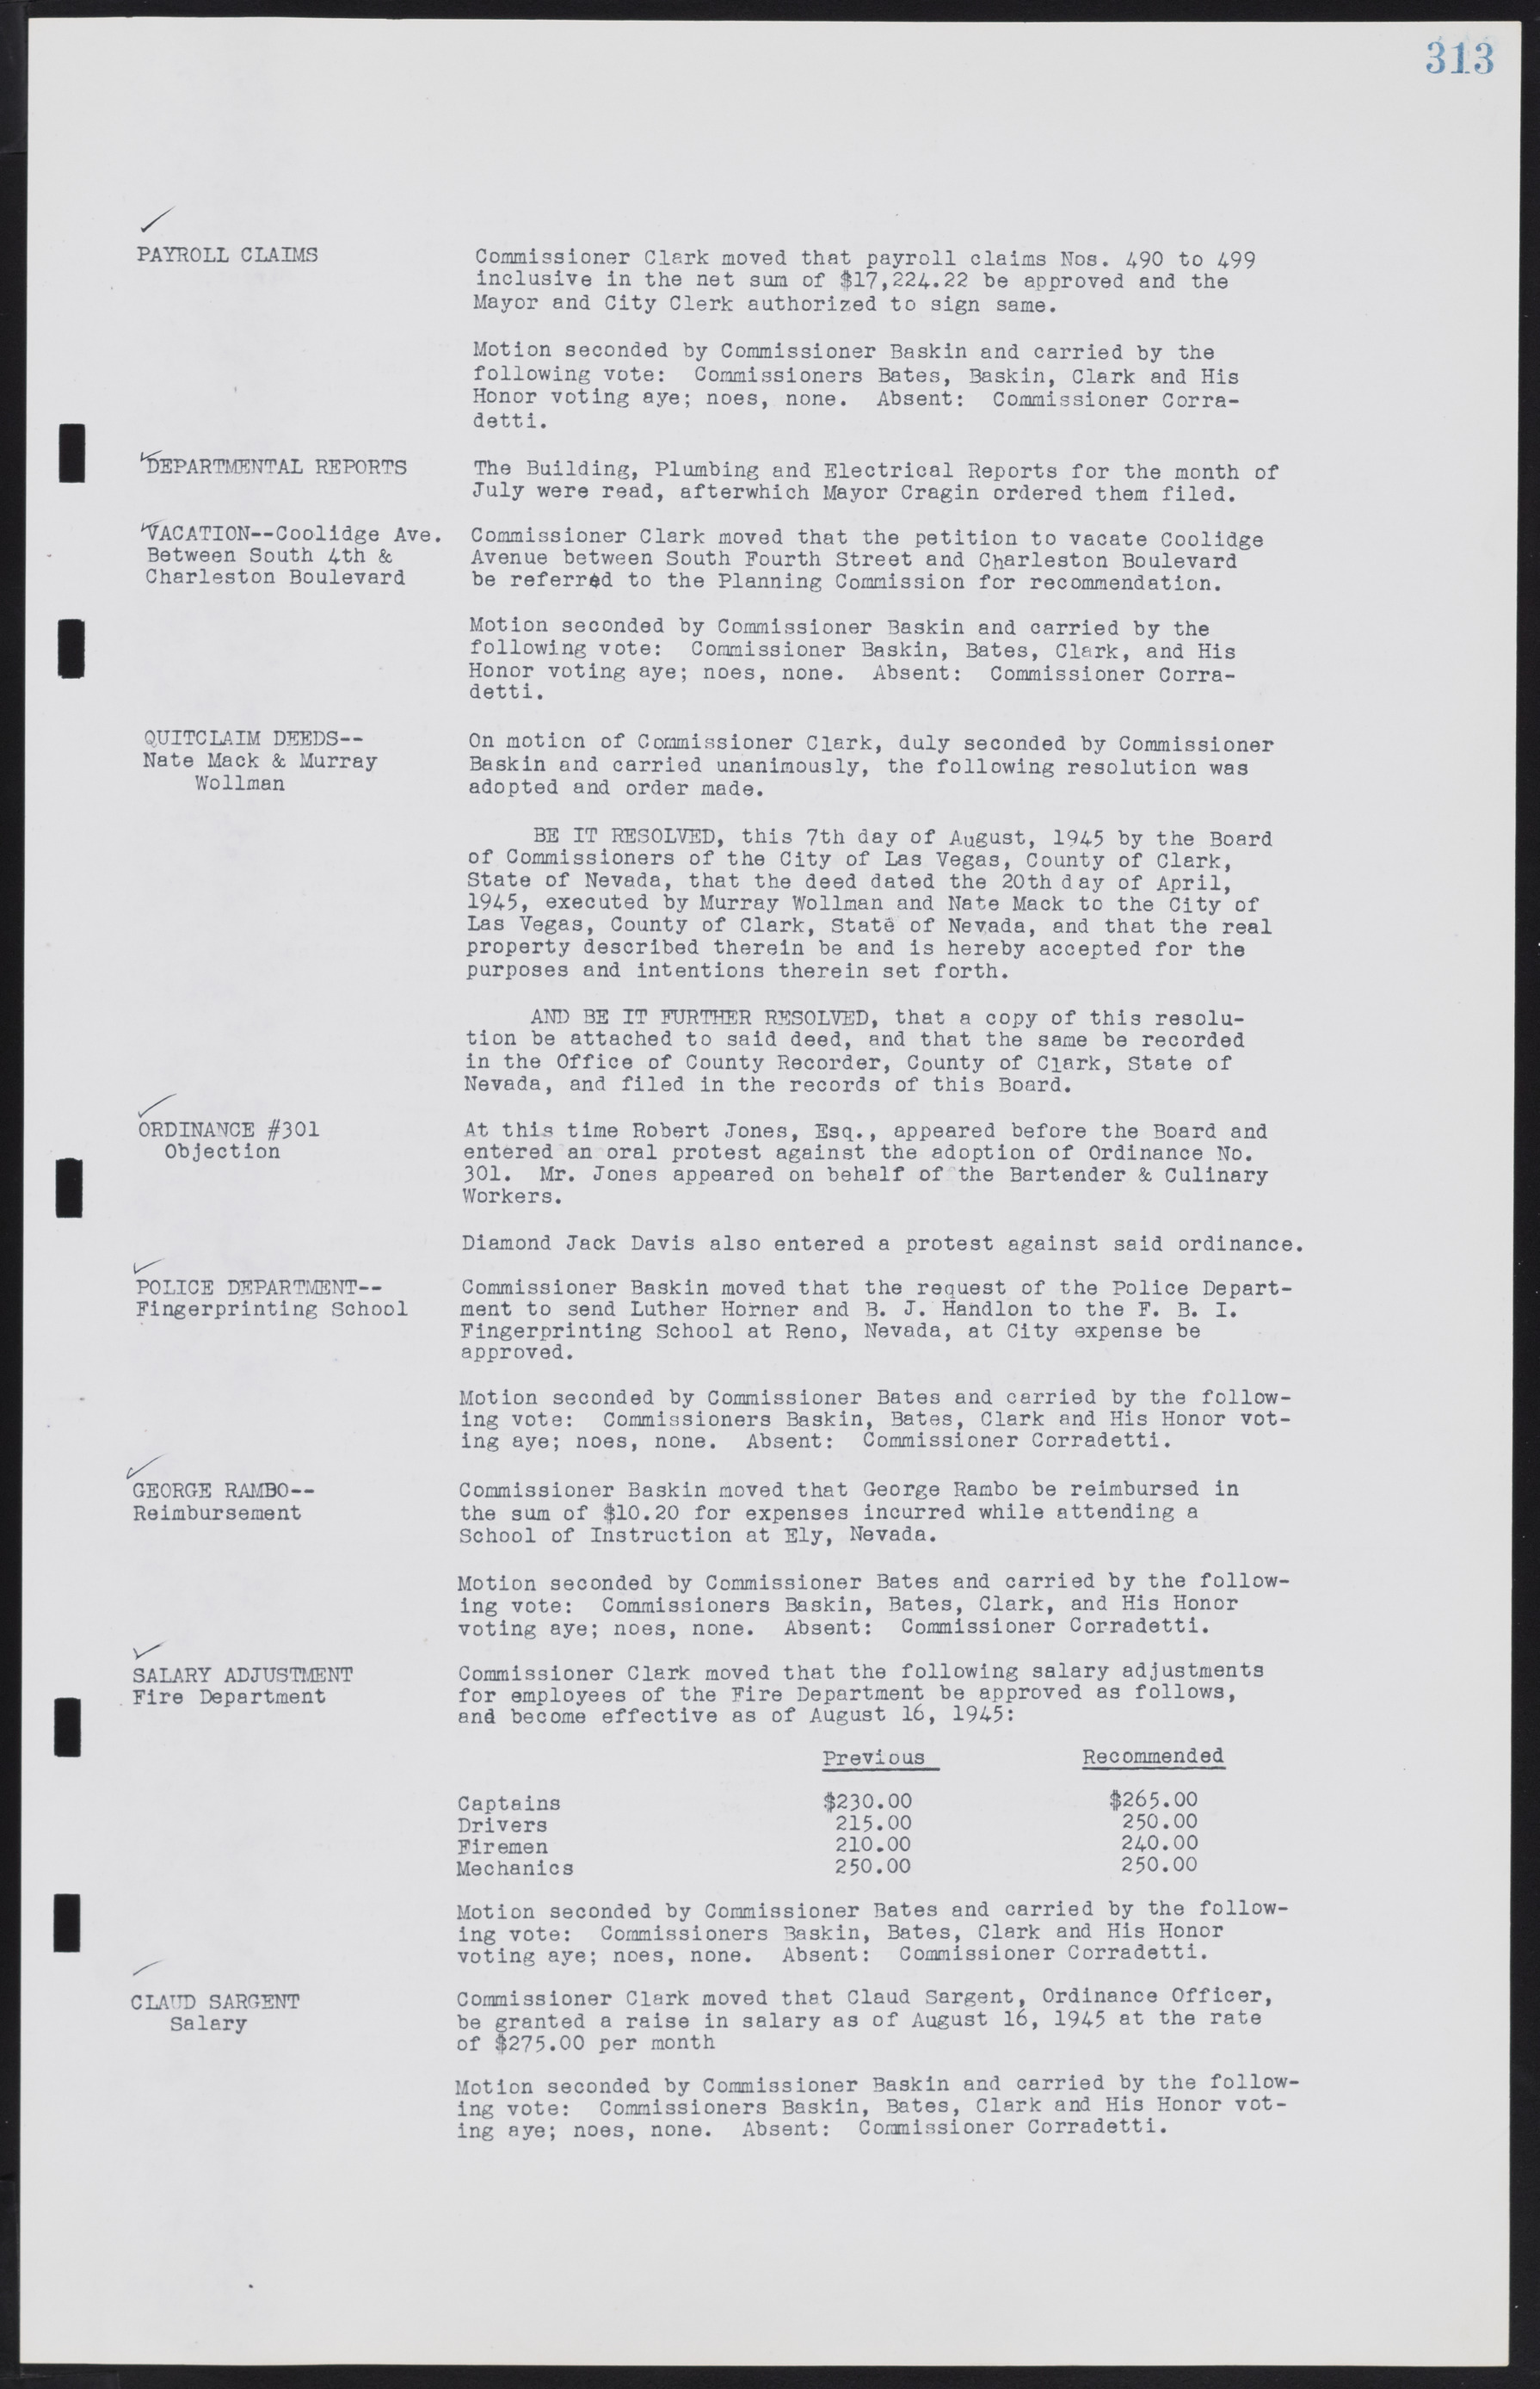 Las Vegas City Commission Minutes, August 11, 1942 to December 30, 1946, lvc000005-337